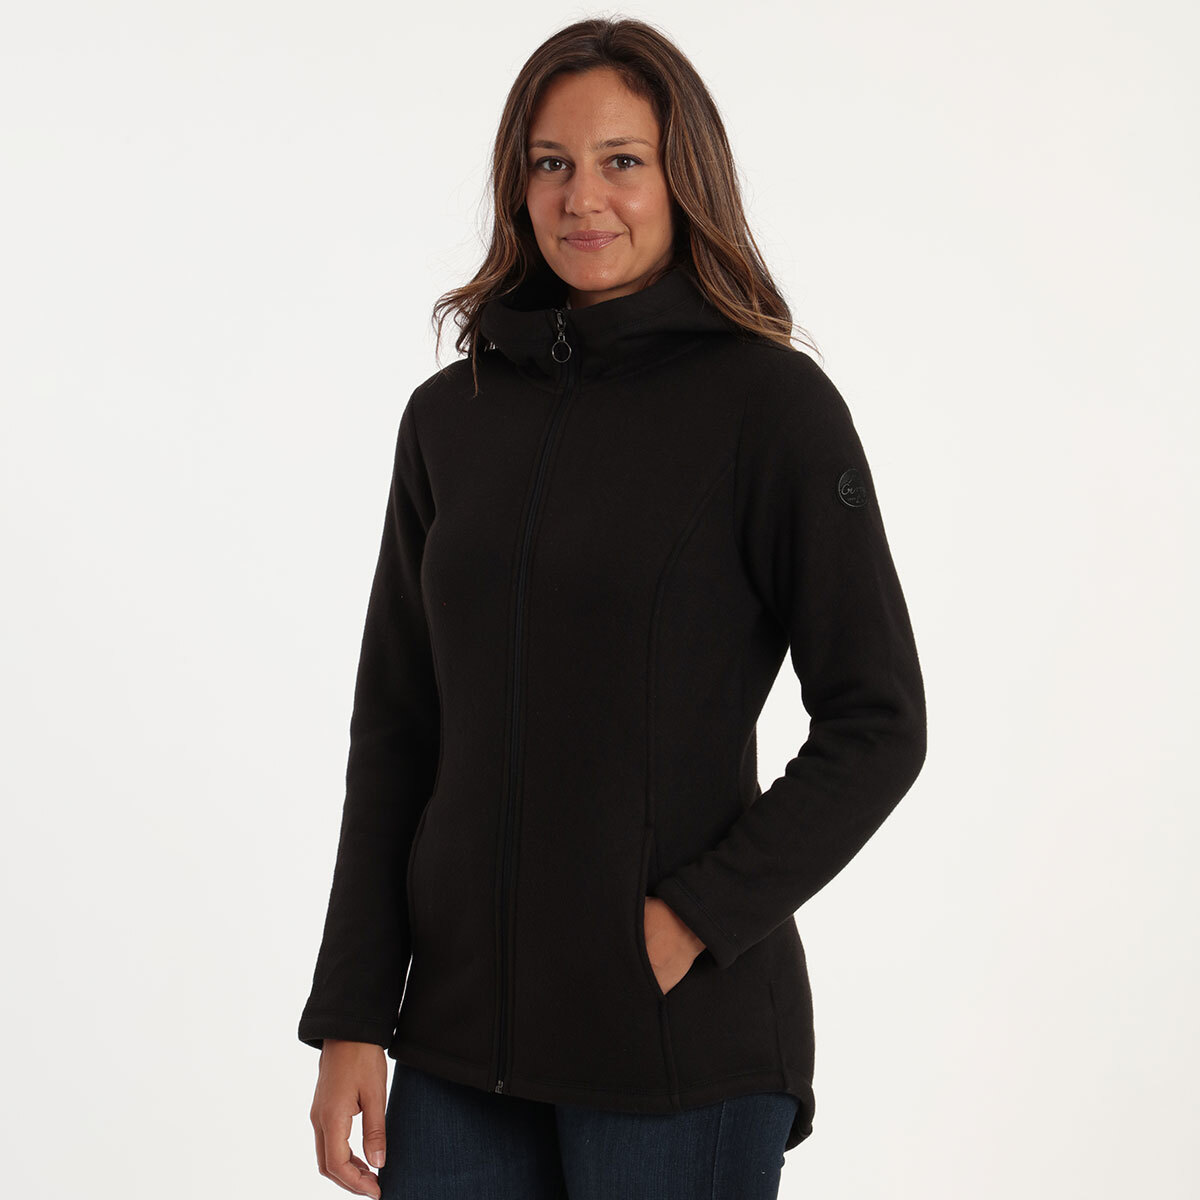 Gerry Stratus Women's Fleece in Black